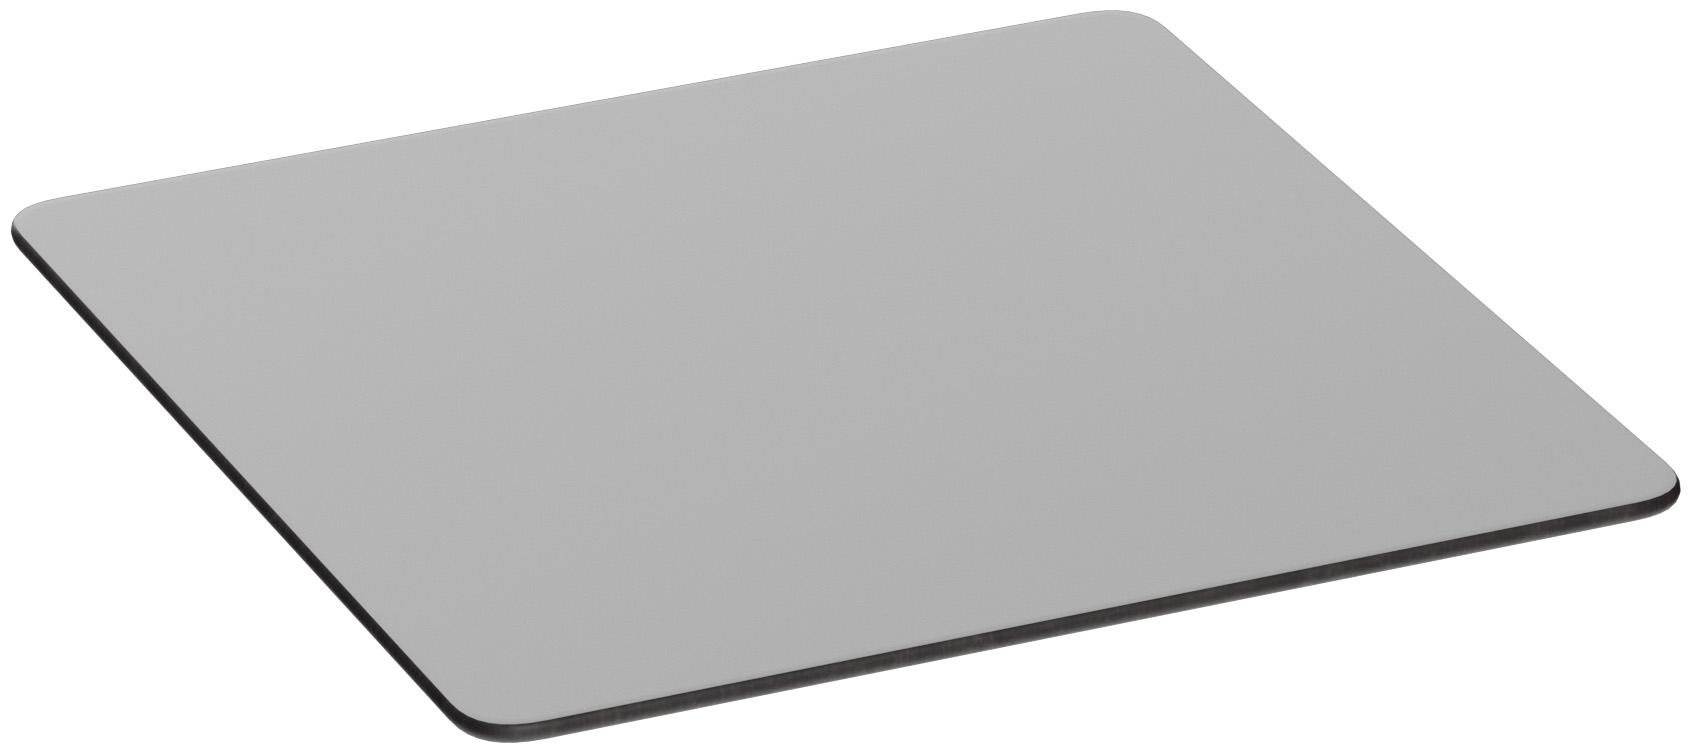 Abbildung Tischplatte Compact Slim A Schrägansicht